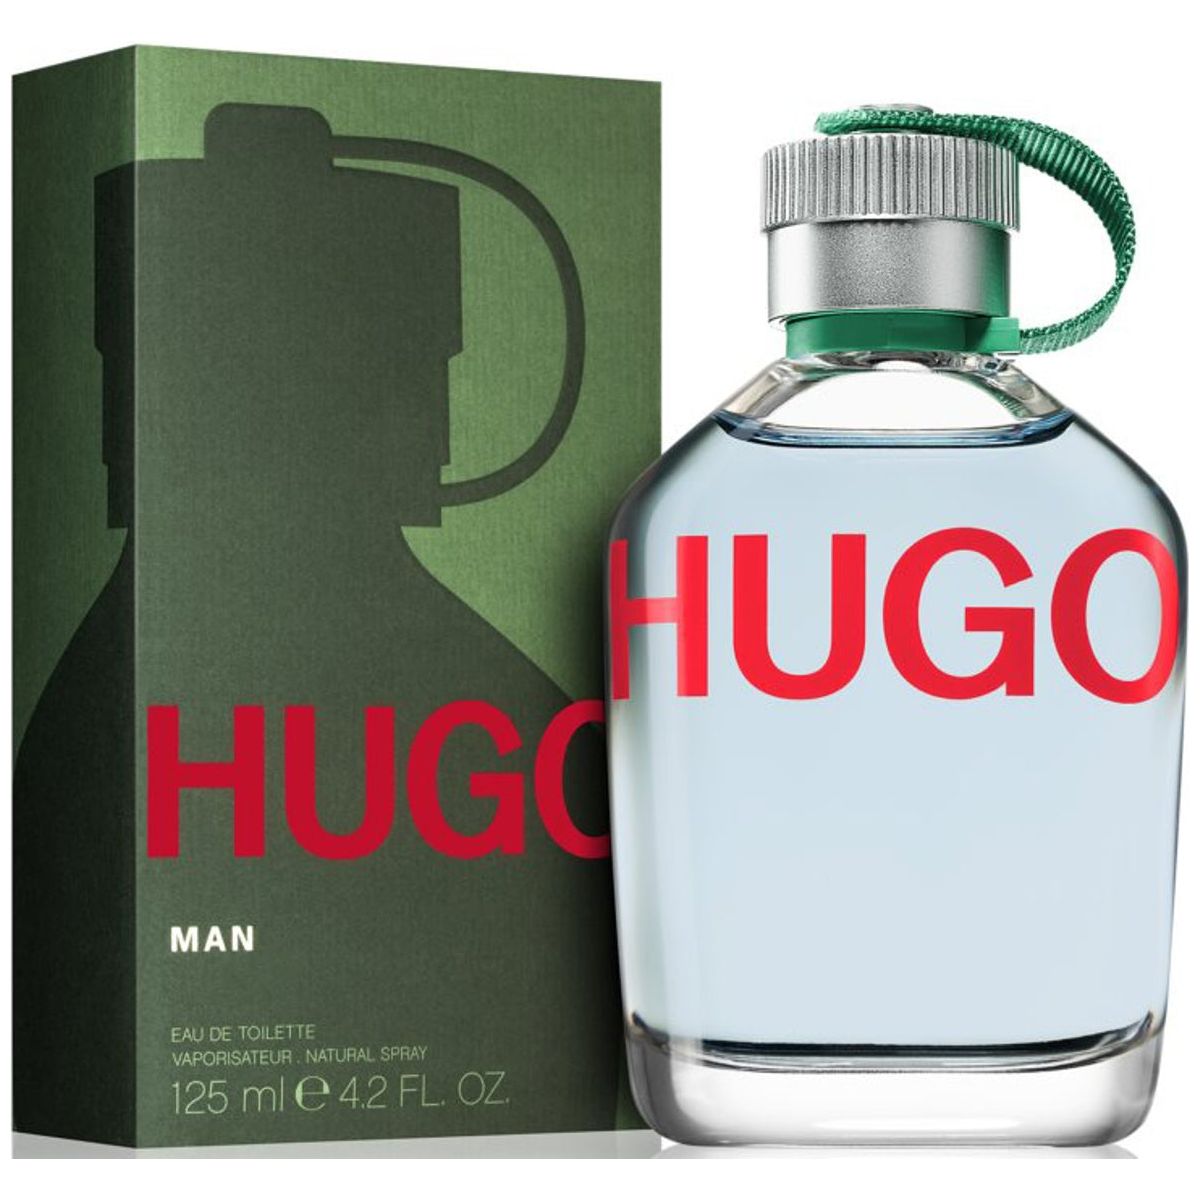 Hugo Man by Hugo Boss oz 4.0 EDT Cologne Spray